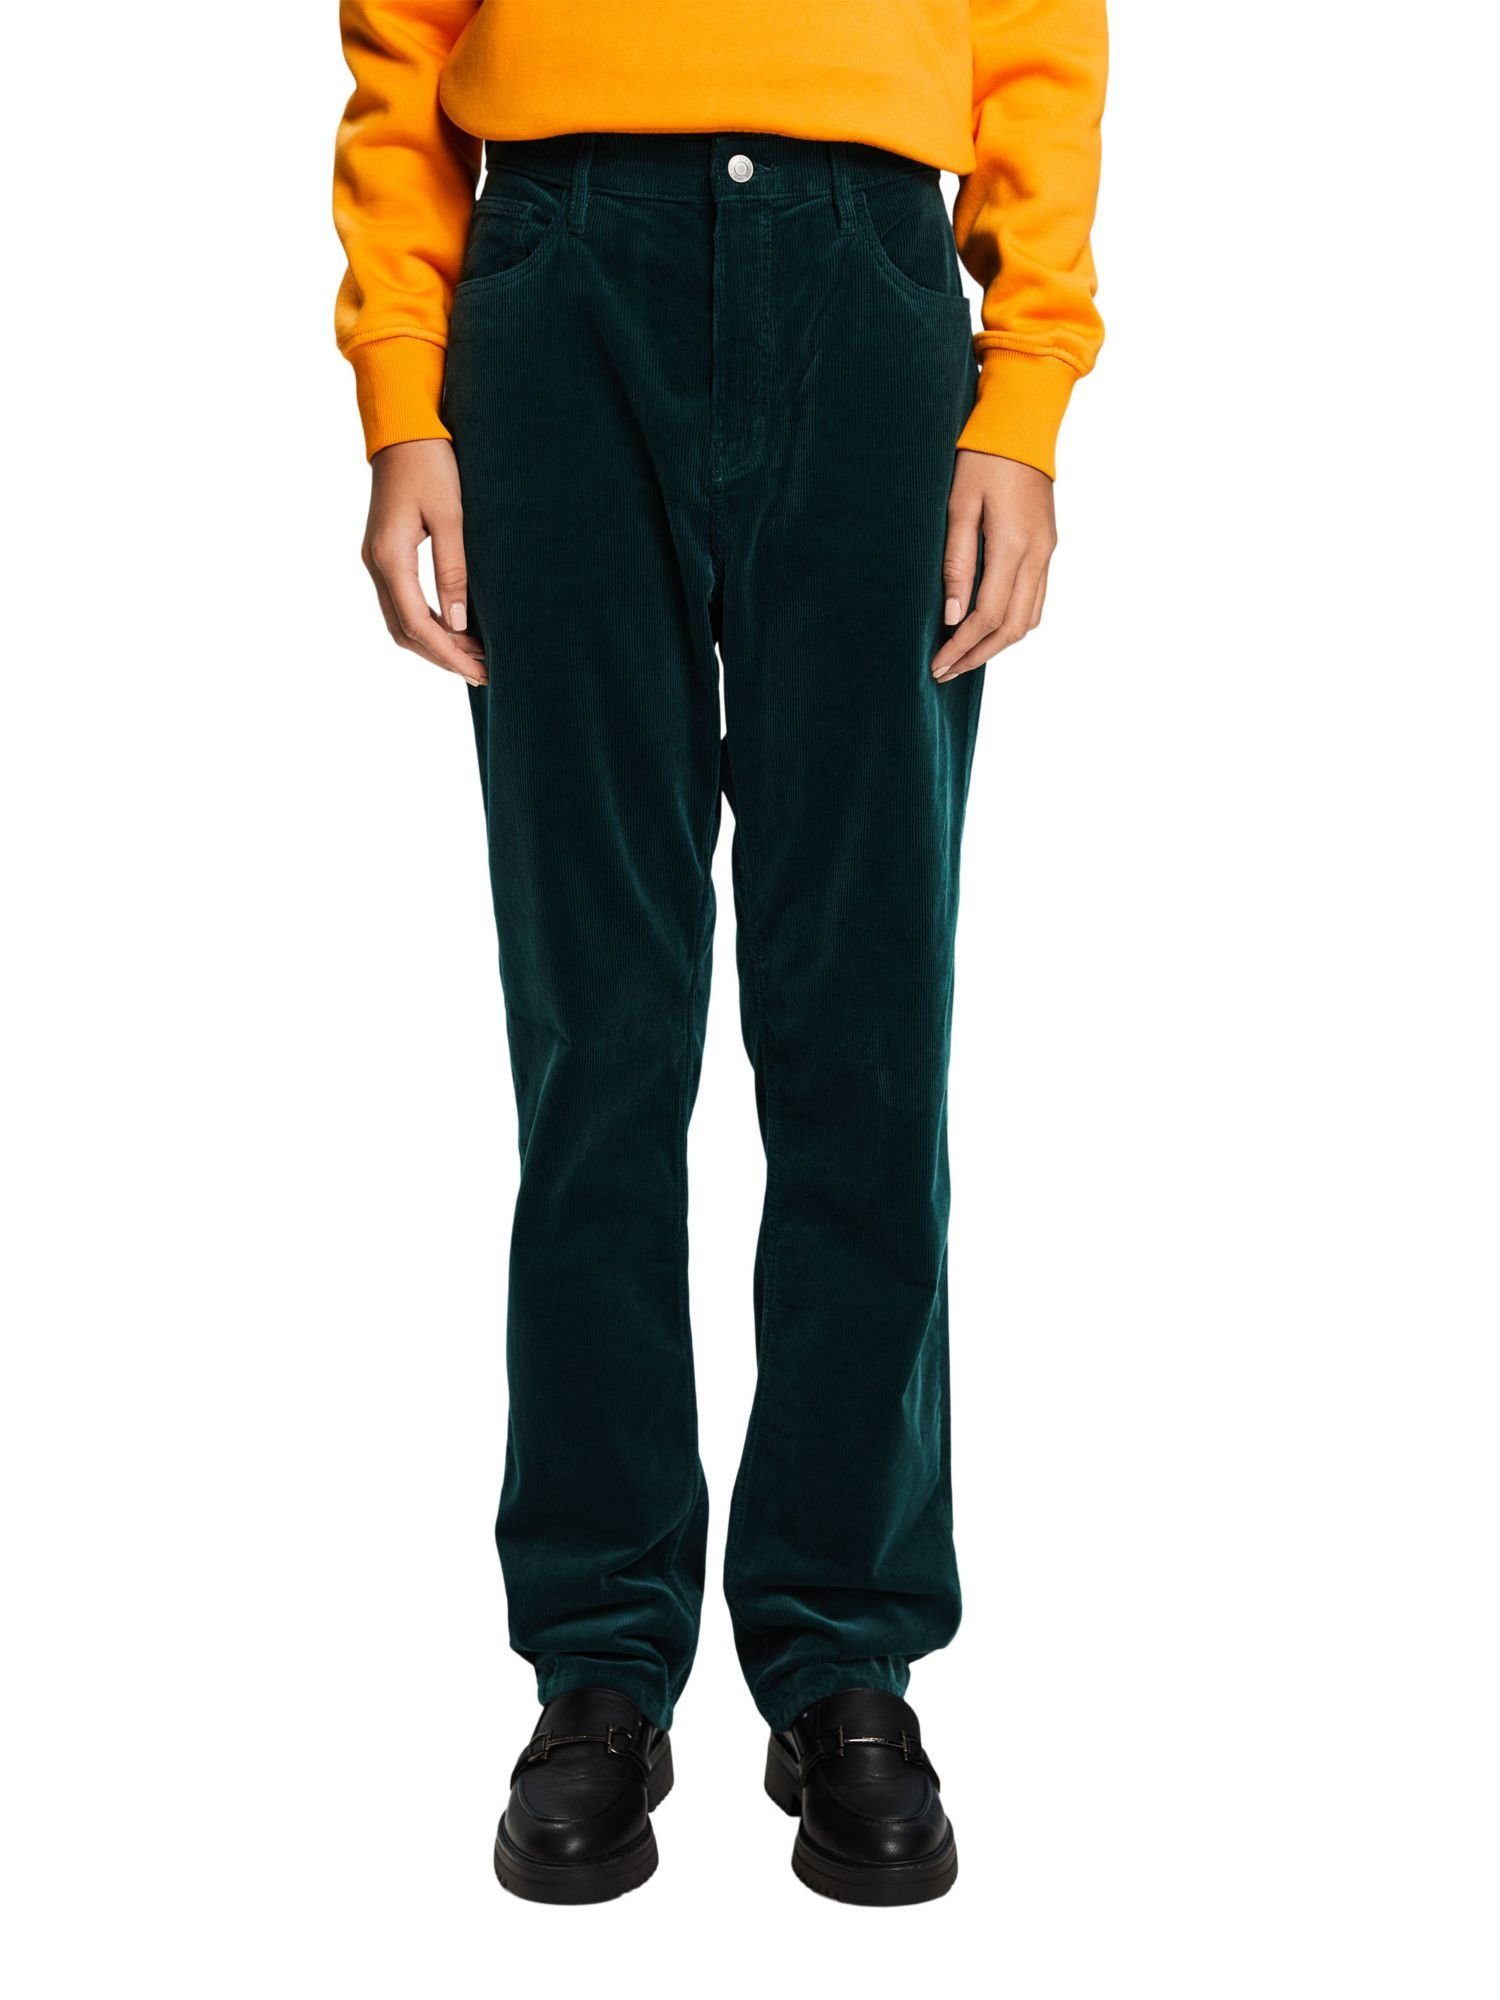 Passform hohem Slim-fit-Jeans mit Bund gerader Cordhose EMERALD und Esprit GREEN